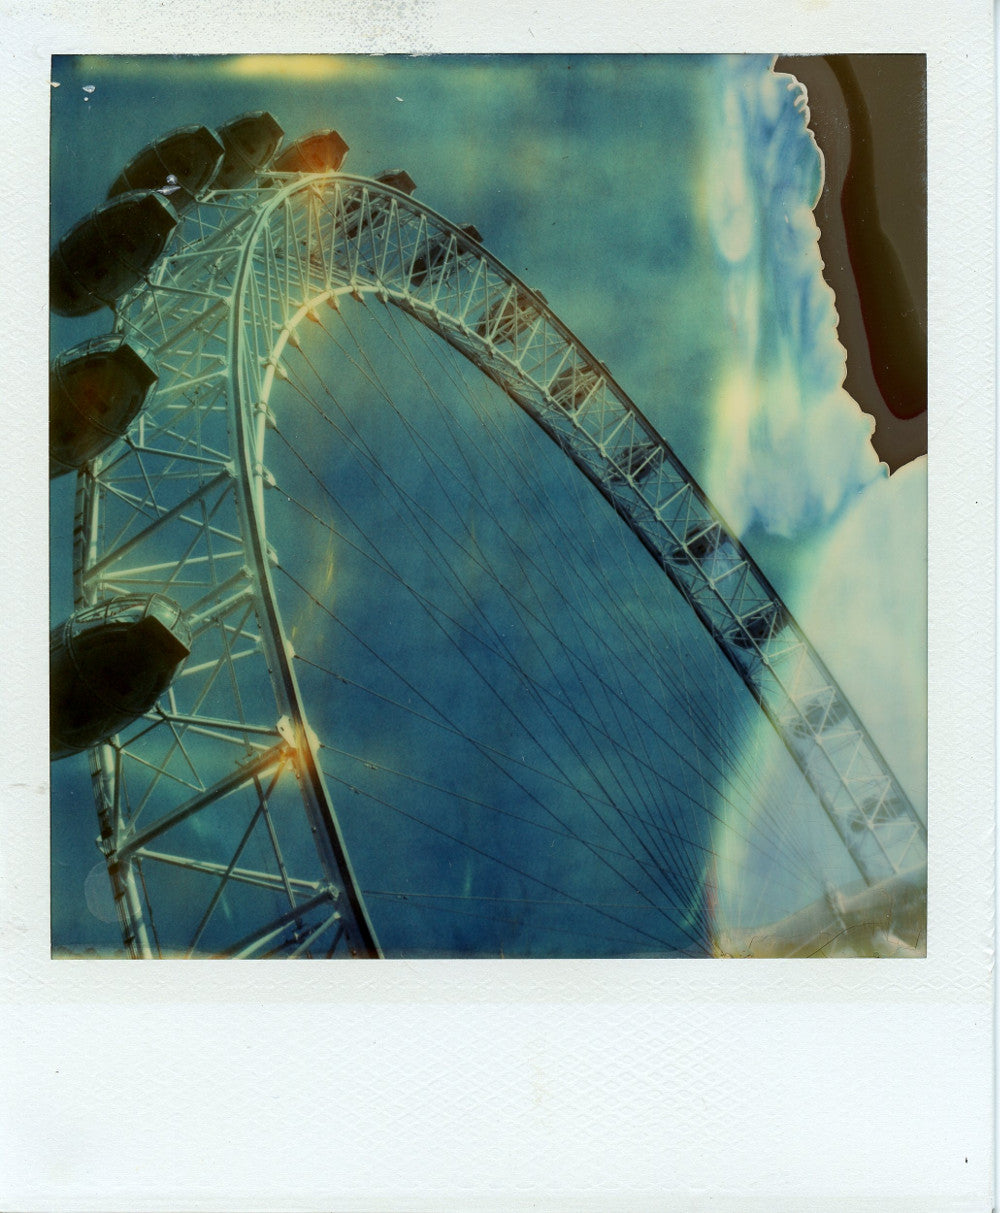 Polaroid time zero image of the london eye